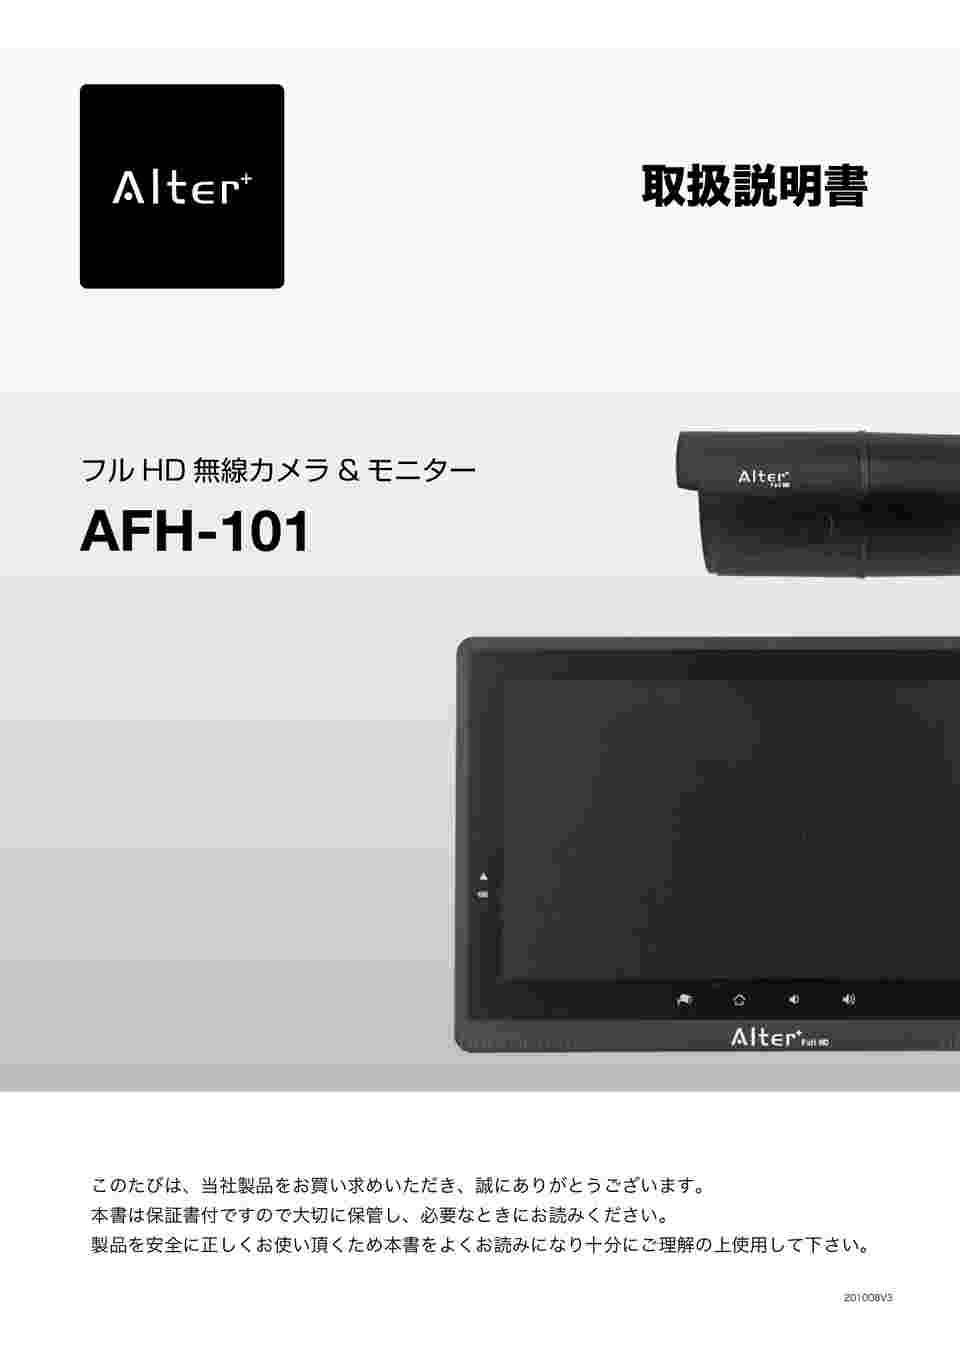 64-9111-89 Alter+ フルHD無線＆10インチモニターセット AFH-101